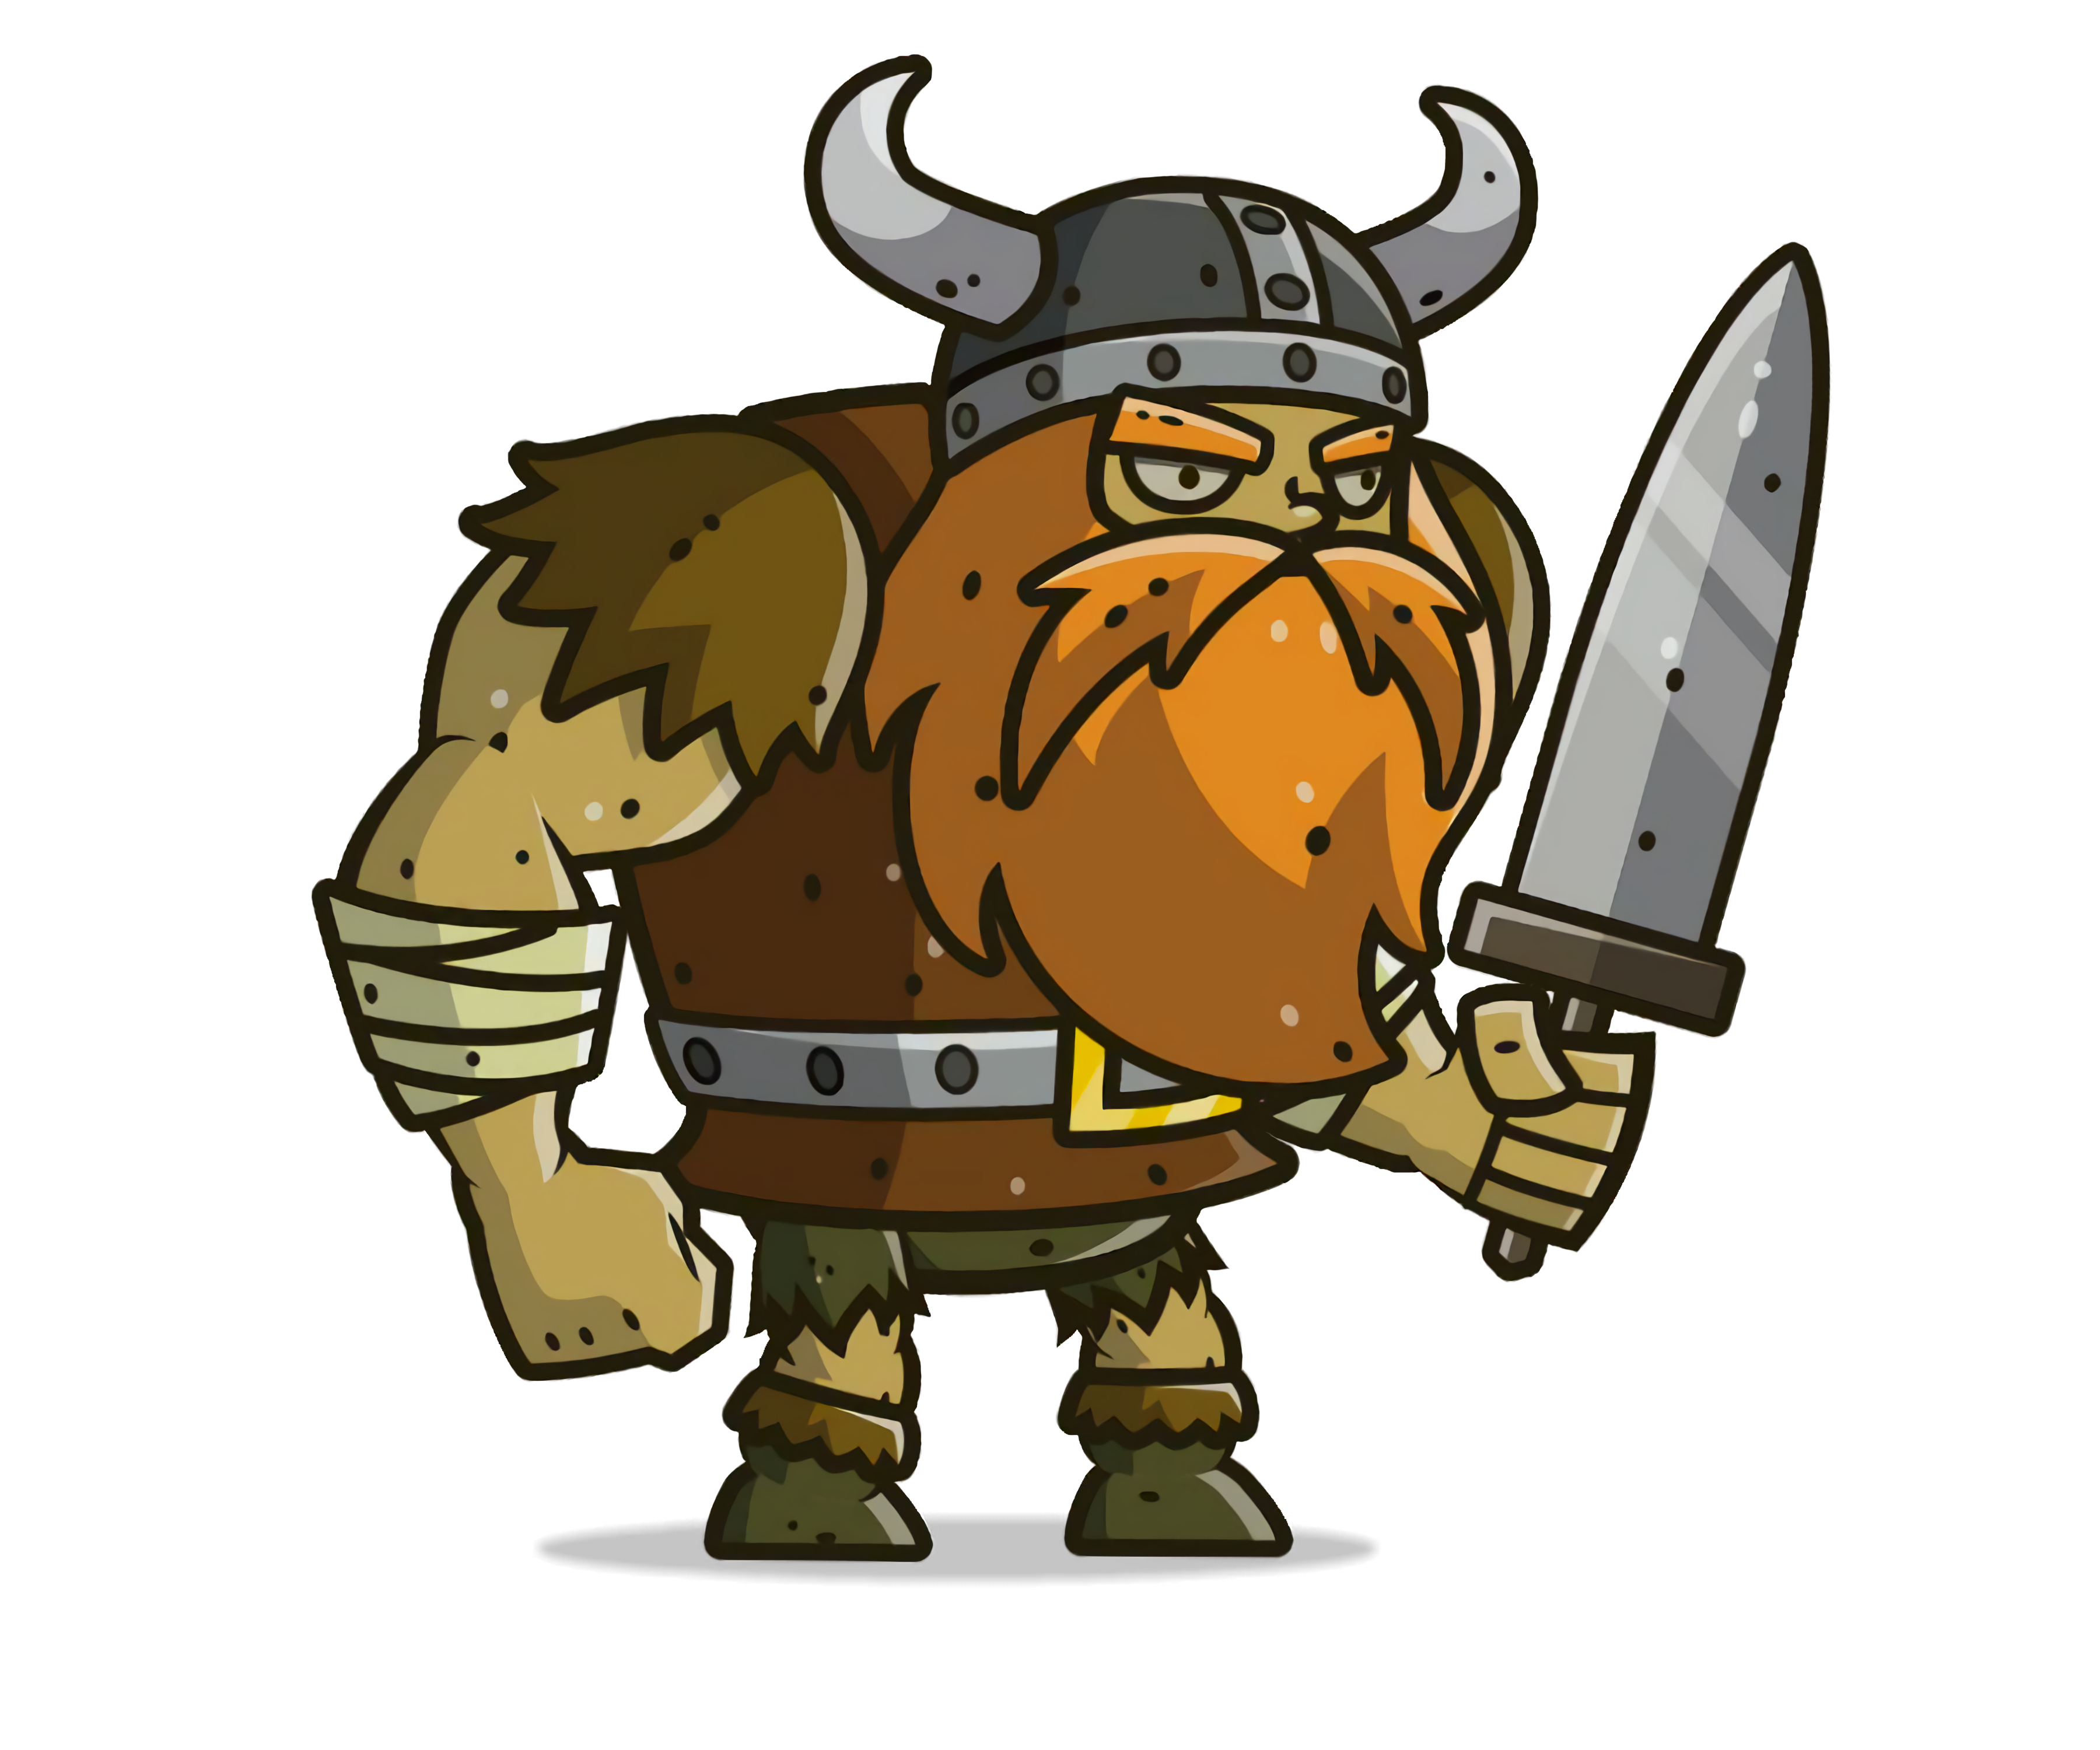 Viking Games